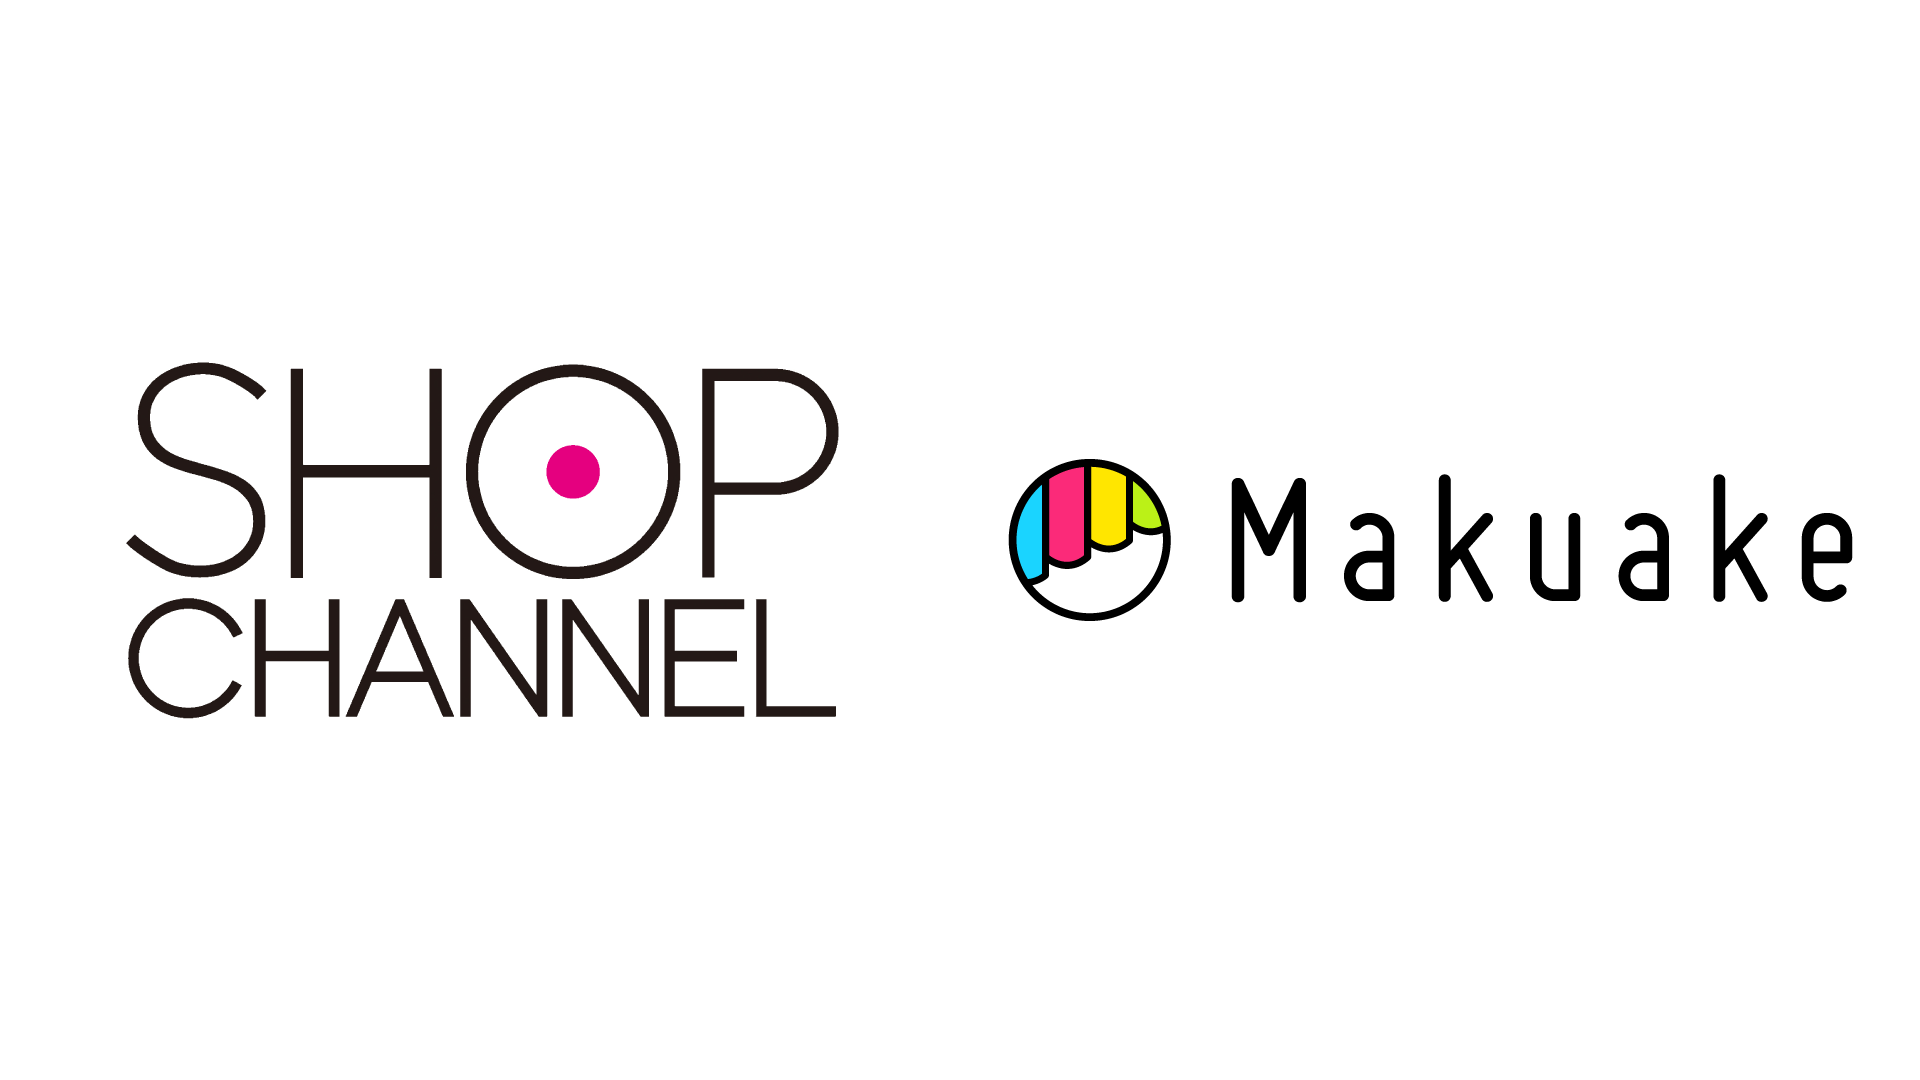 マクアケ、ジュピターショップチャンネルと協業 〜「Makuake」「ショップチャンネル」両サービスの取り組みを通じて新商品が生まれ、広がる支援